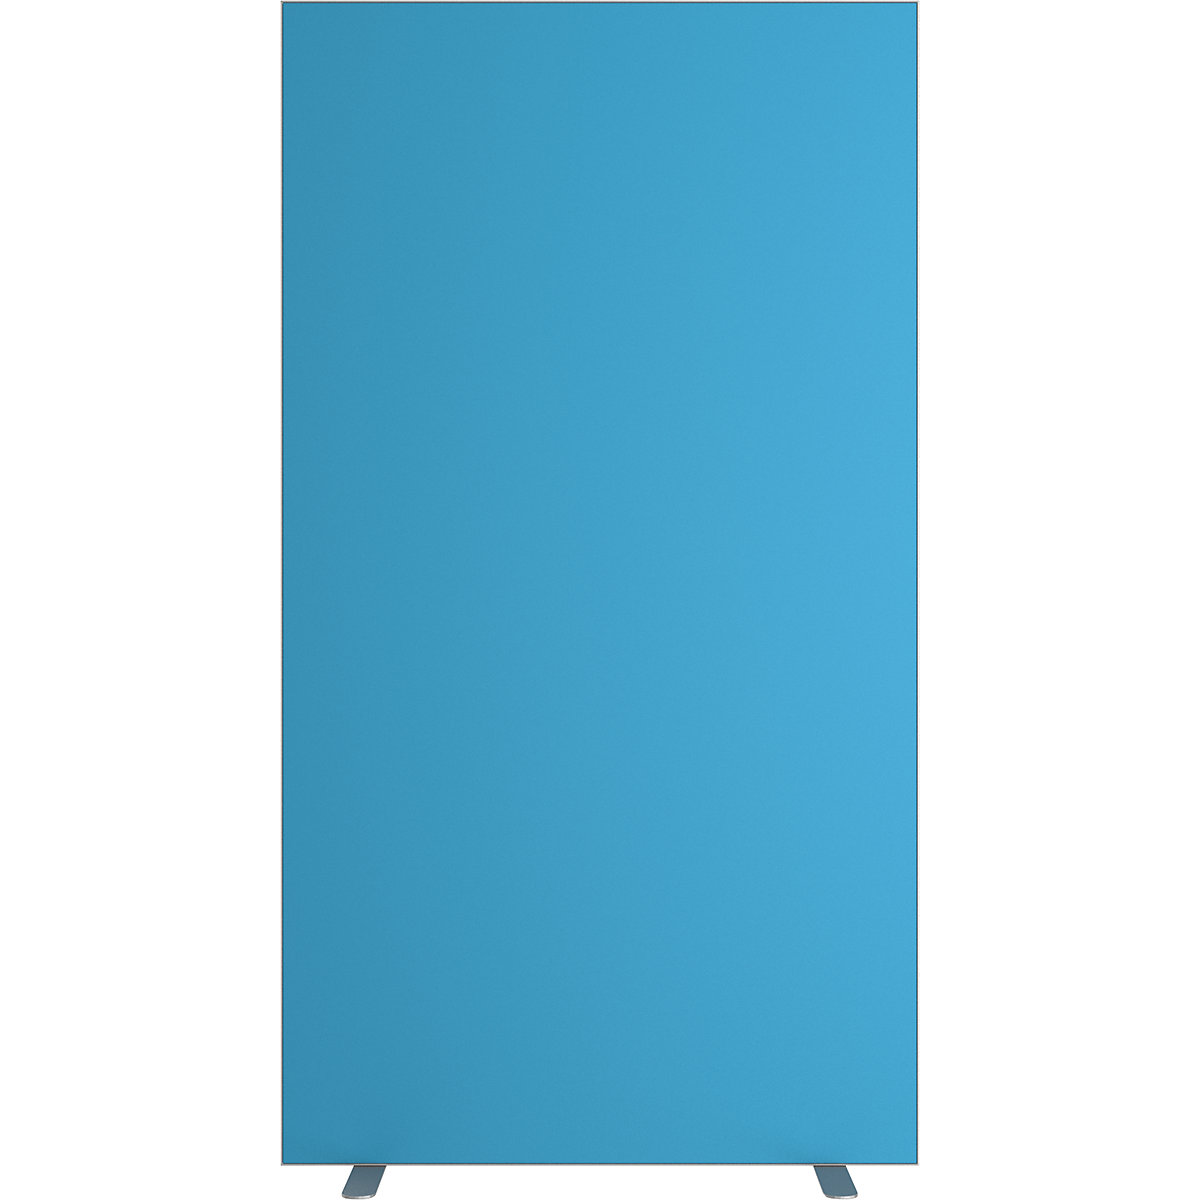 Pared separadora easyScreen, monocolor, con aislamiento acústico, azul, anchura 940 mm-14